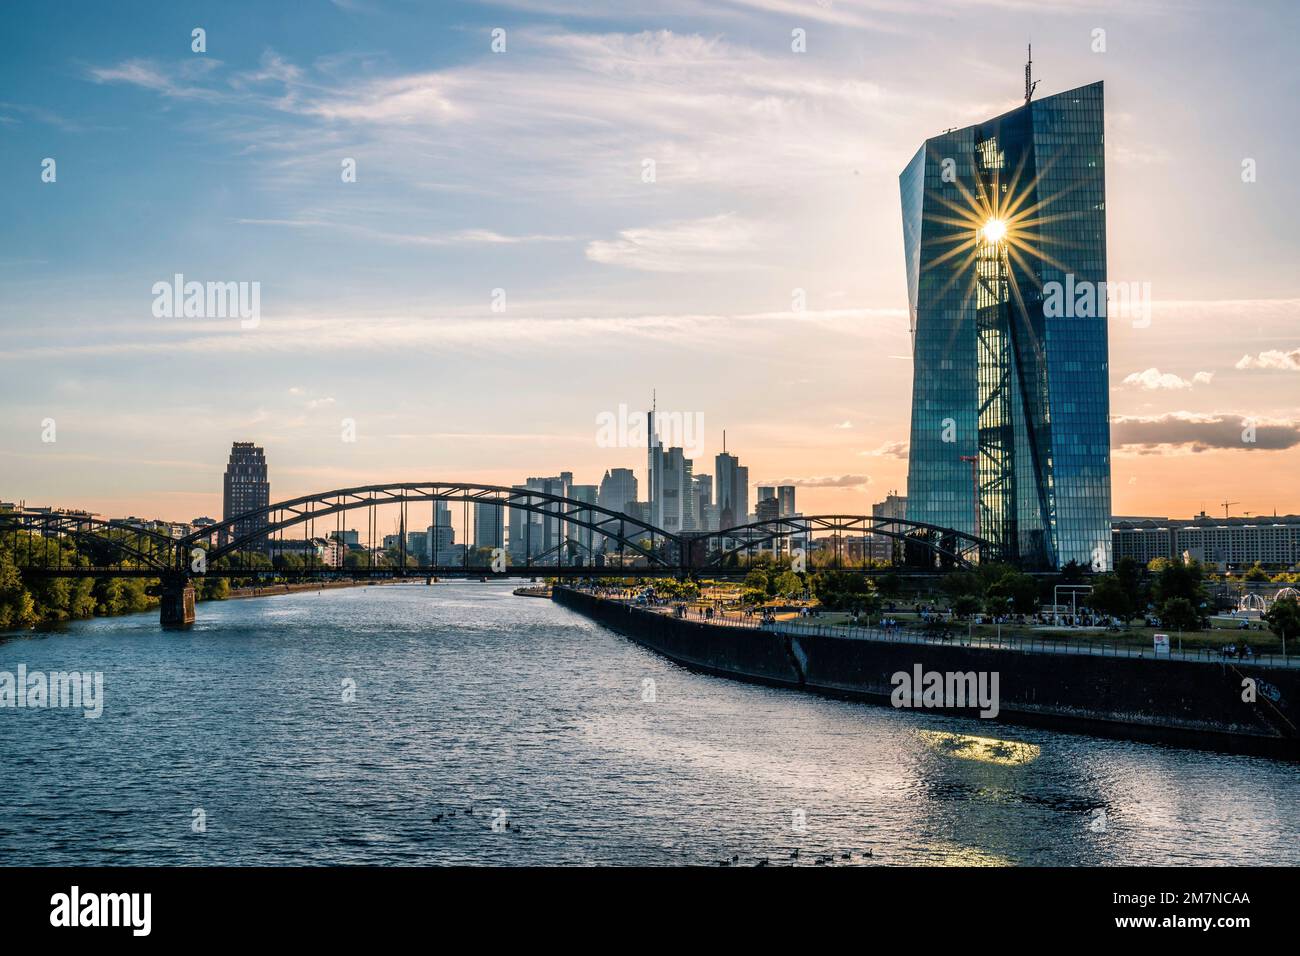 Panorama de la ciudad al atardecer, hermosa vista sobre el río Main hasta el horizonte y las orillas del Banco Central Europeo, Frankfurt am Main, Hesse Alemania Foto de stock